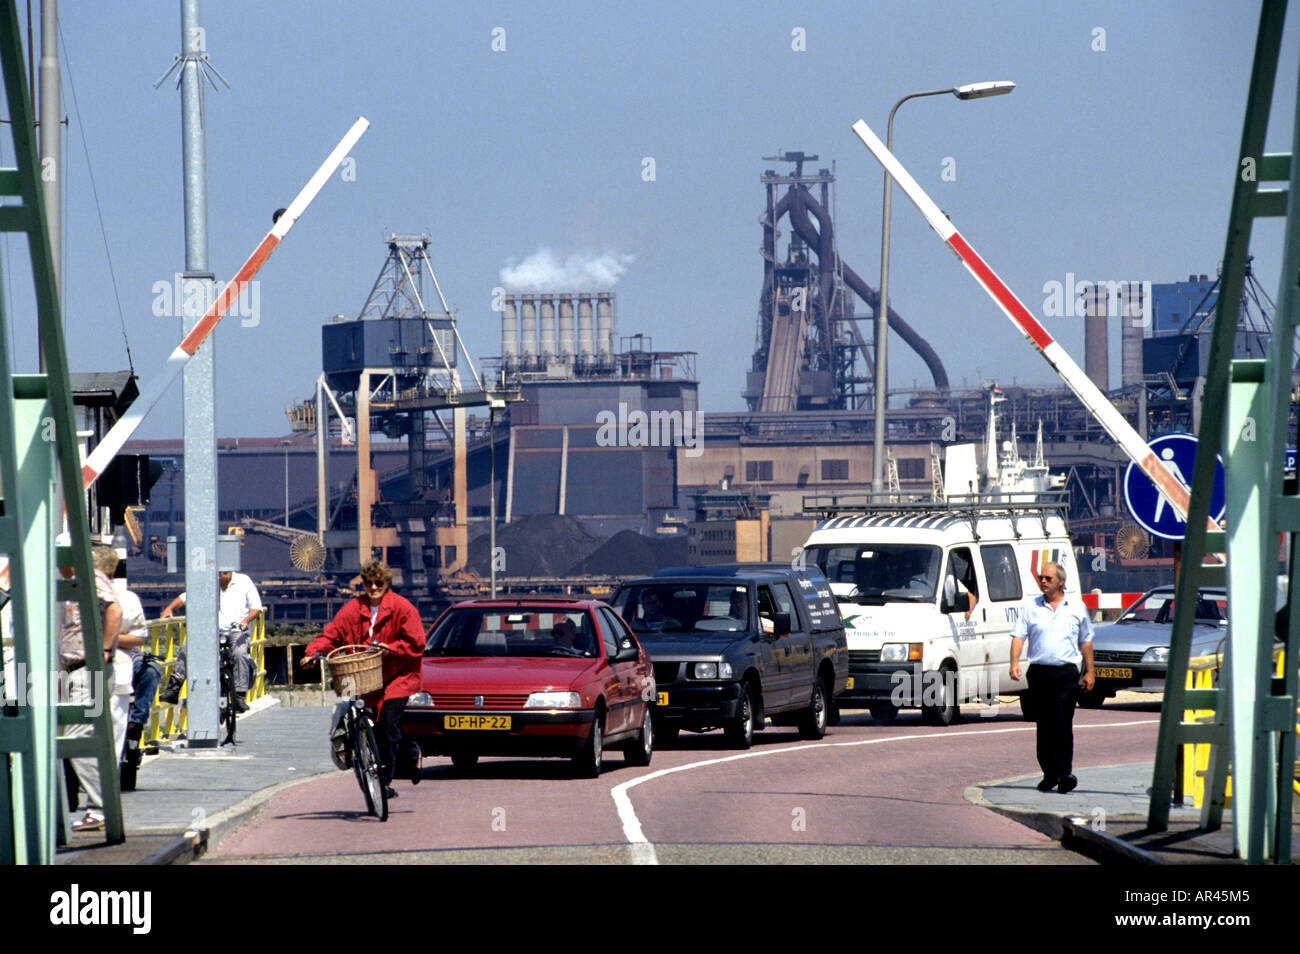 Heavy Industry in Corus IJmuiden Koninklijke Hoogovens gate Stock Photo